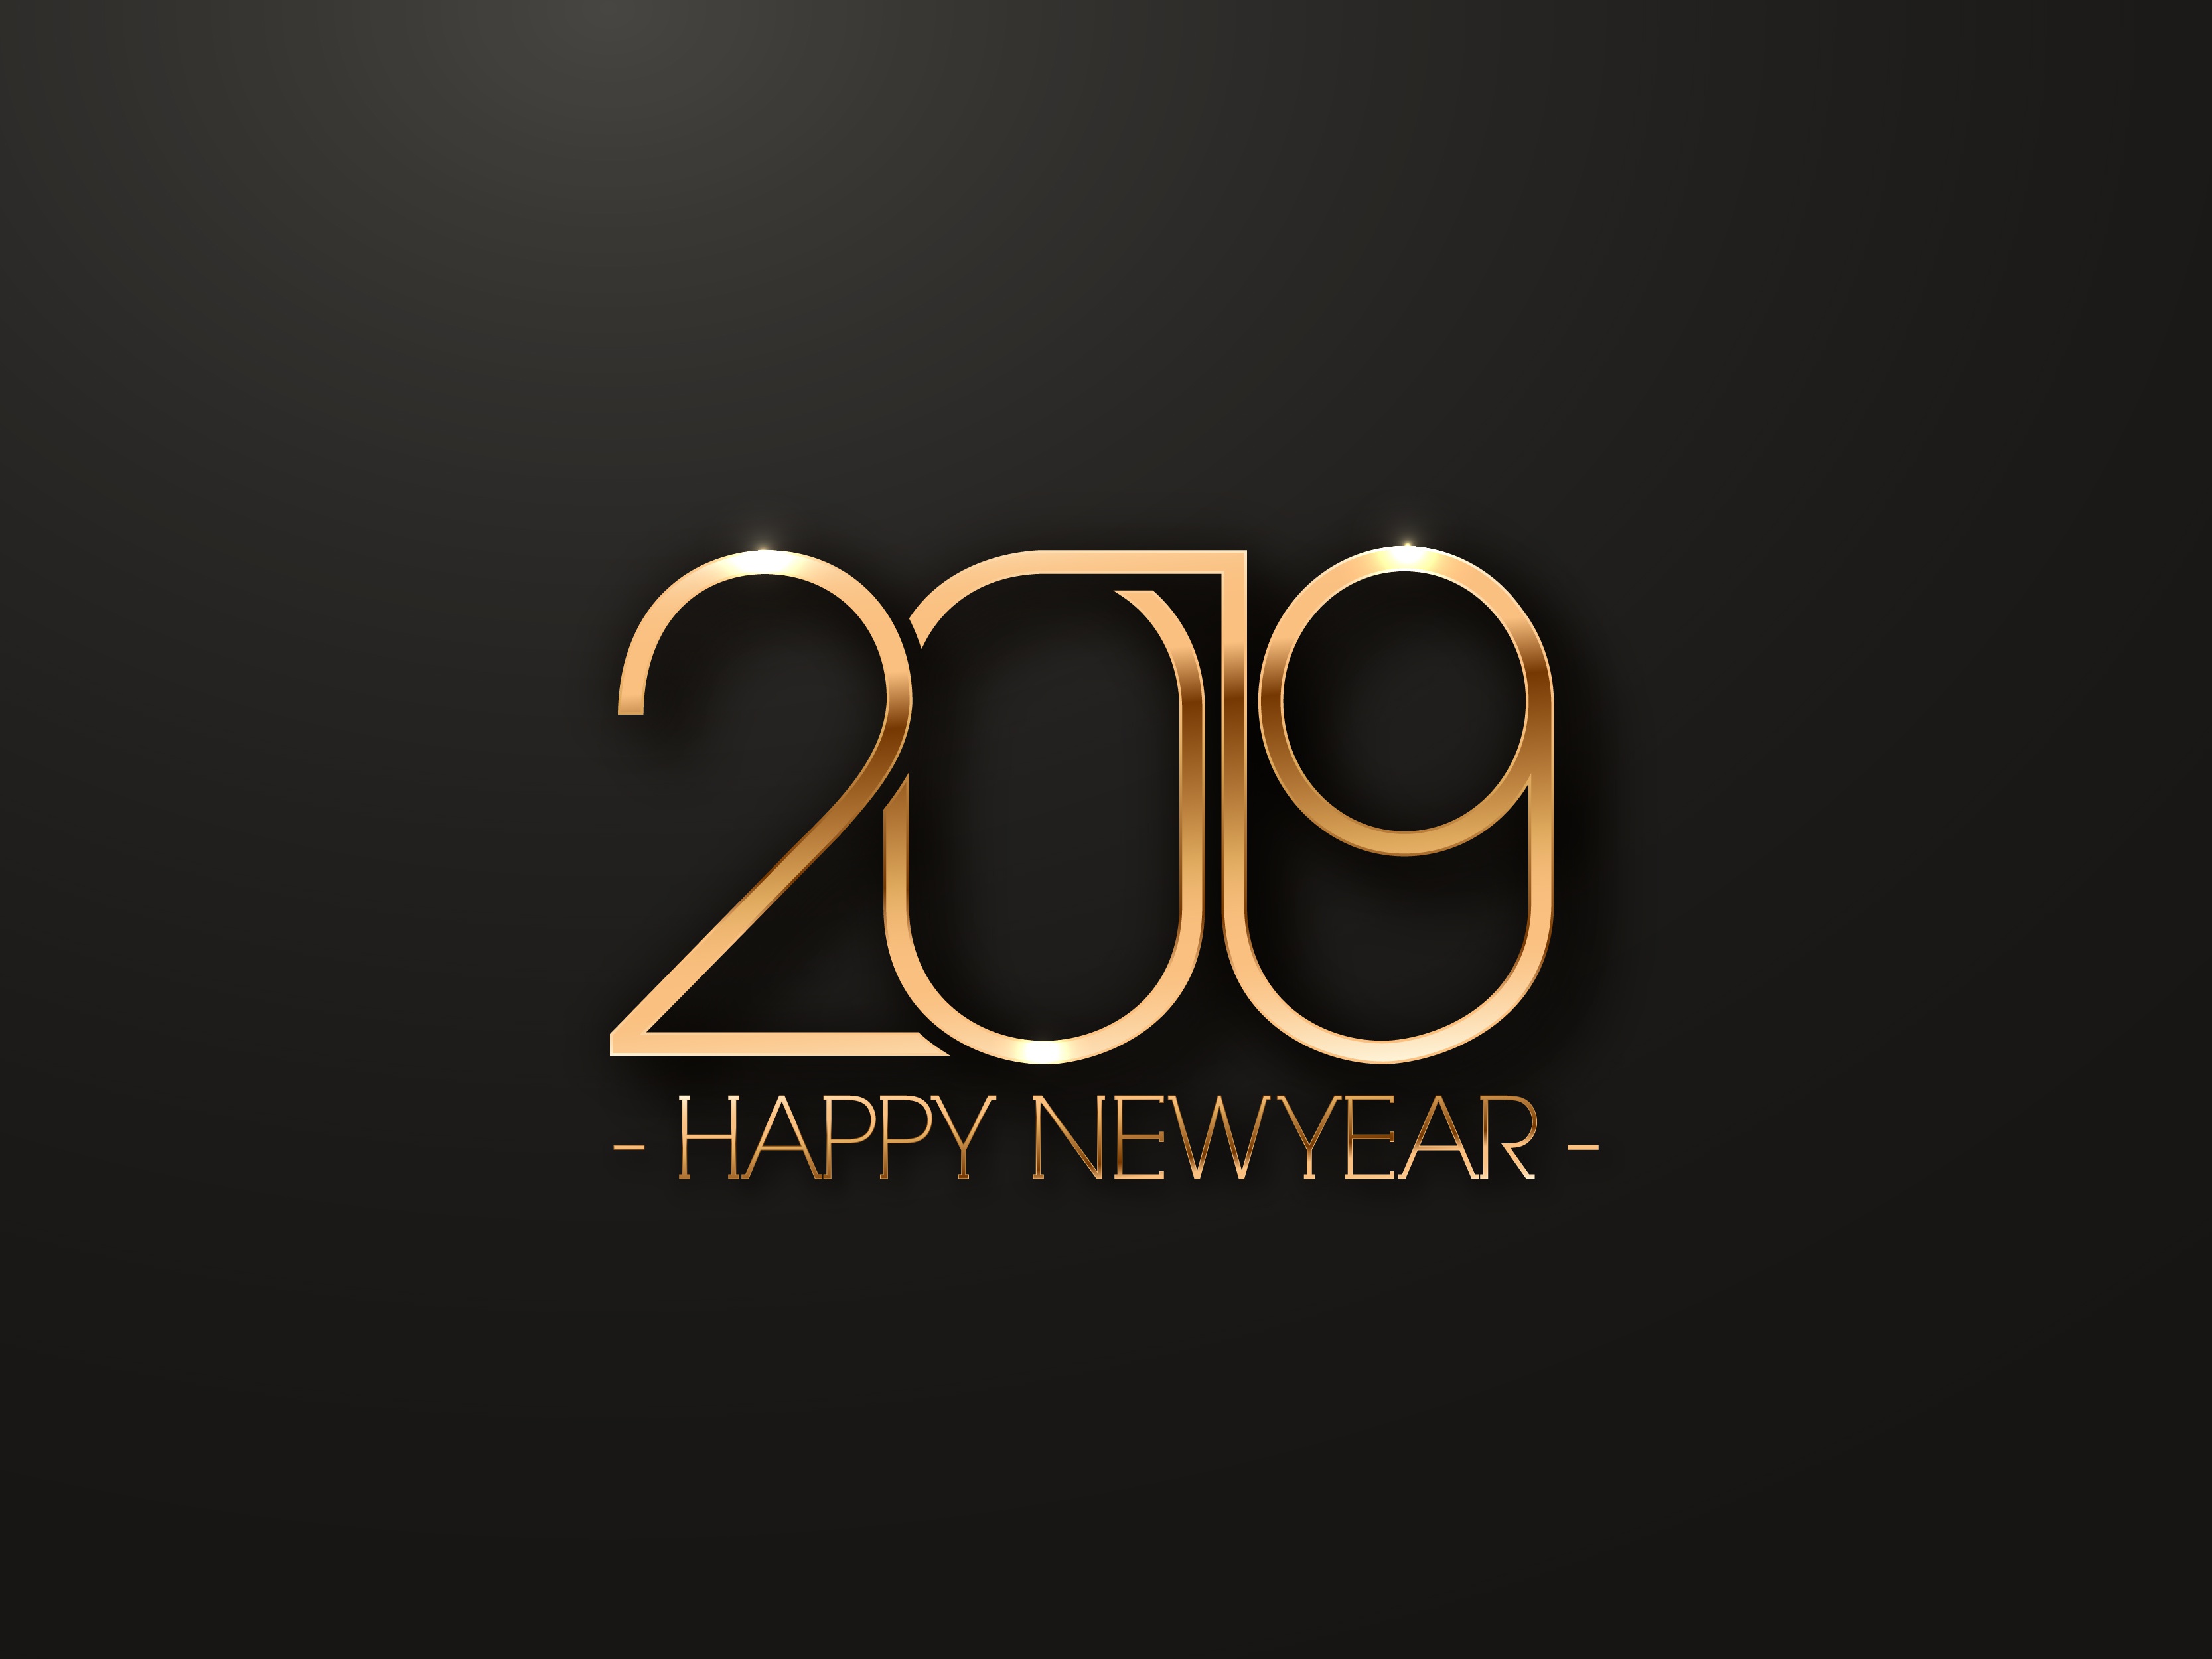 Descarga gratuita de fondo de pantalla para móvil de Día Festivo, Feliz Año Nuevo, Año Nuevo 2019.